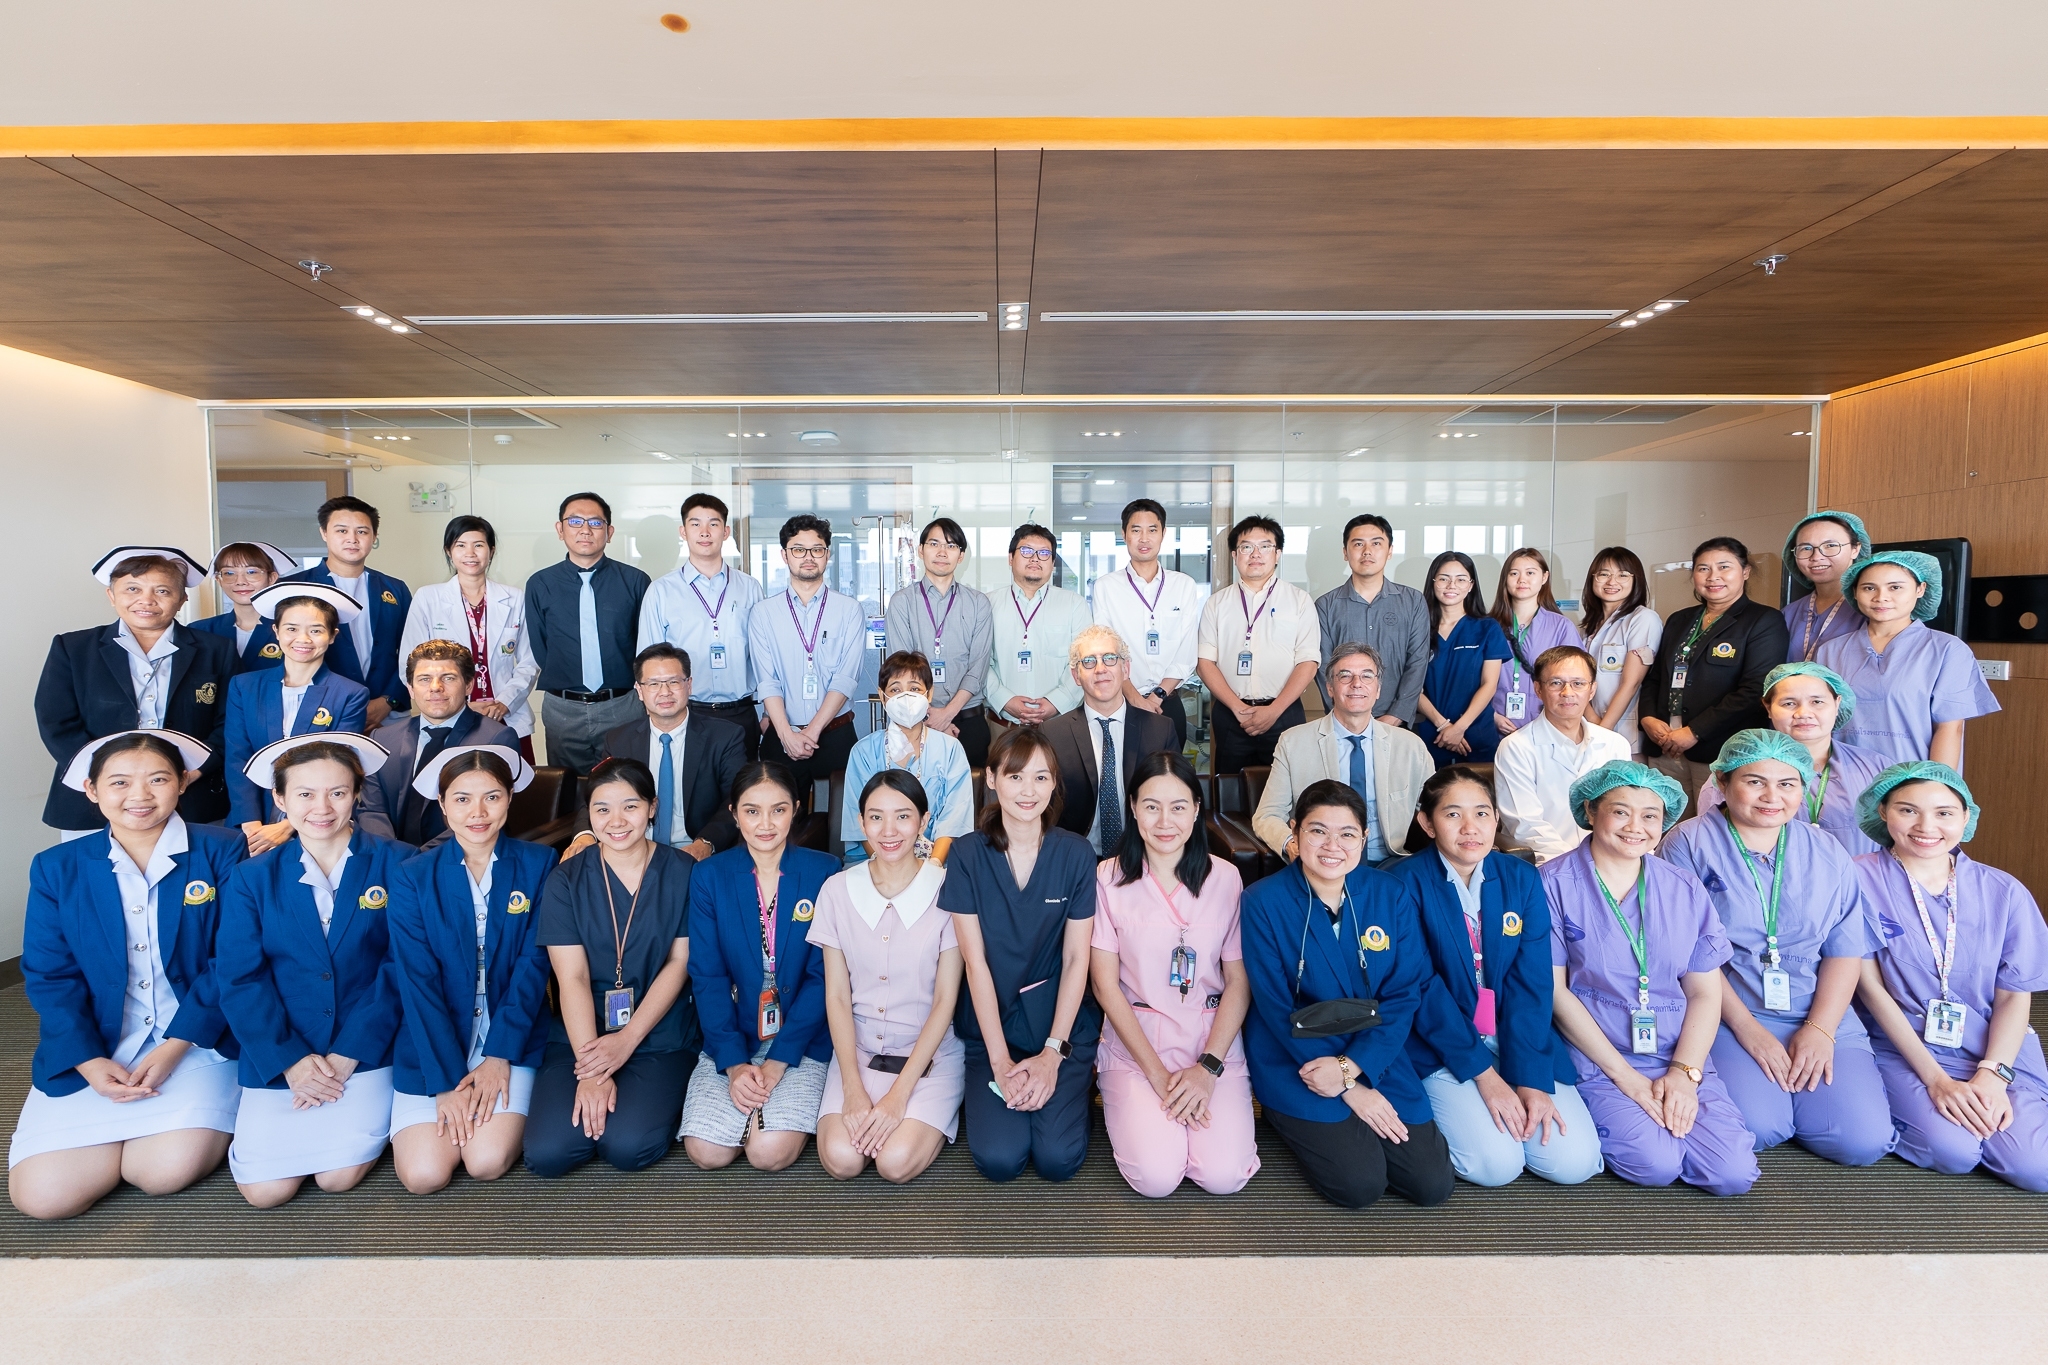 บันทึกภาพประวัติศาสตร์การผ่าตัดปลูกถ่ายไตด้วยหุ่นยนต์ผ่าตัด (Robotic Assisted Kidney Transplant) รายแรกของประเทศไทย